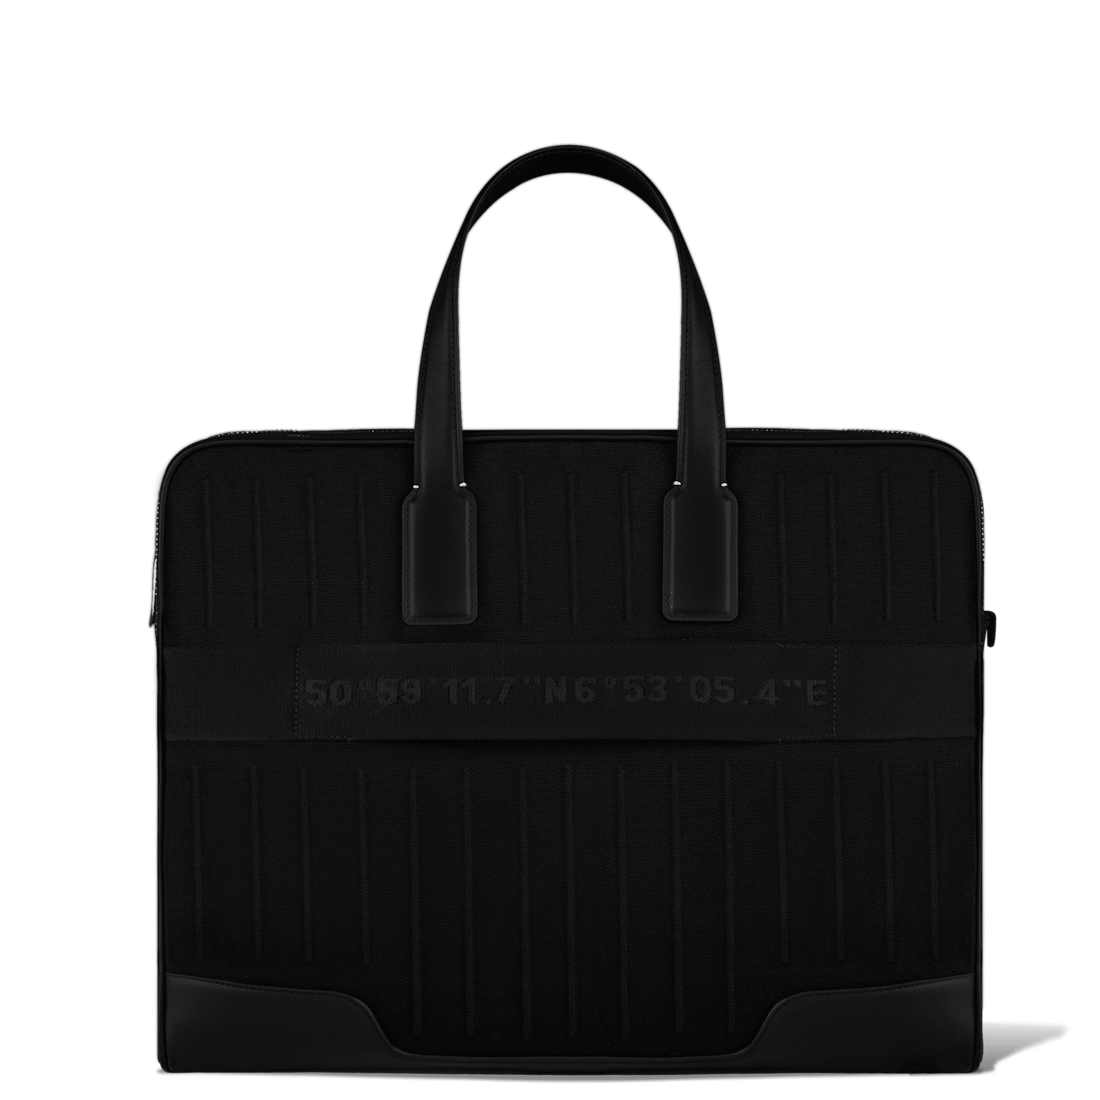 BEST LV LAPTOP BAGS* Louis Vuitton purses that fit a 15 MacBook Pro